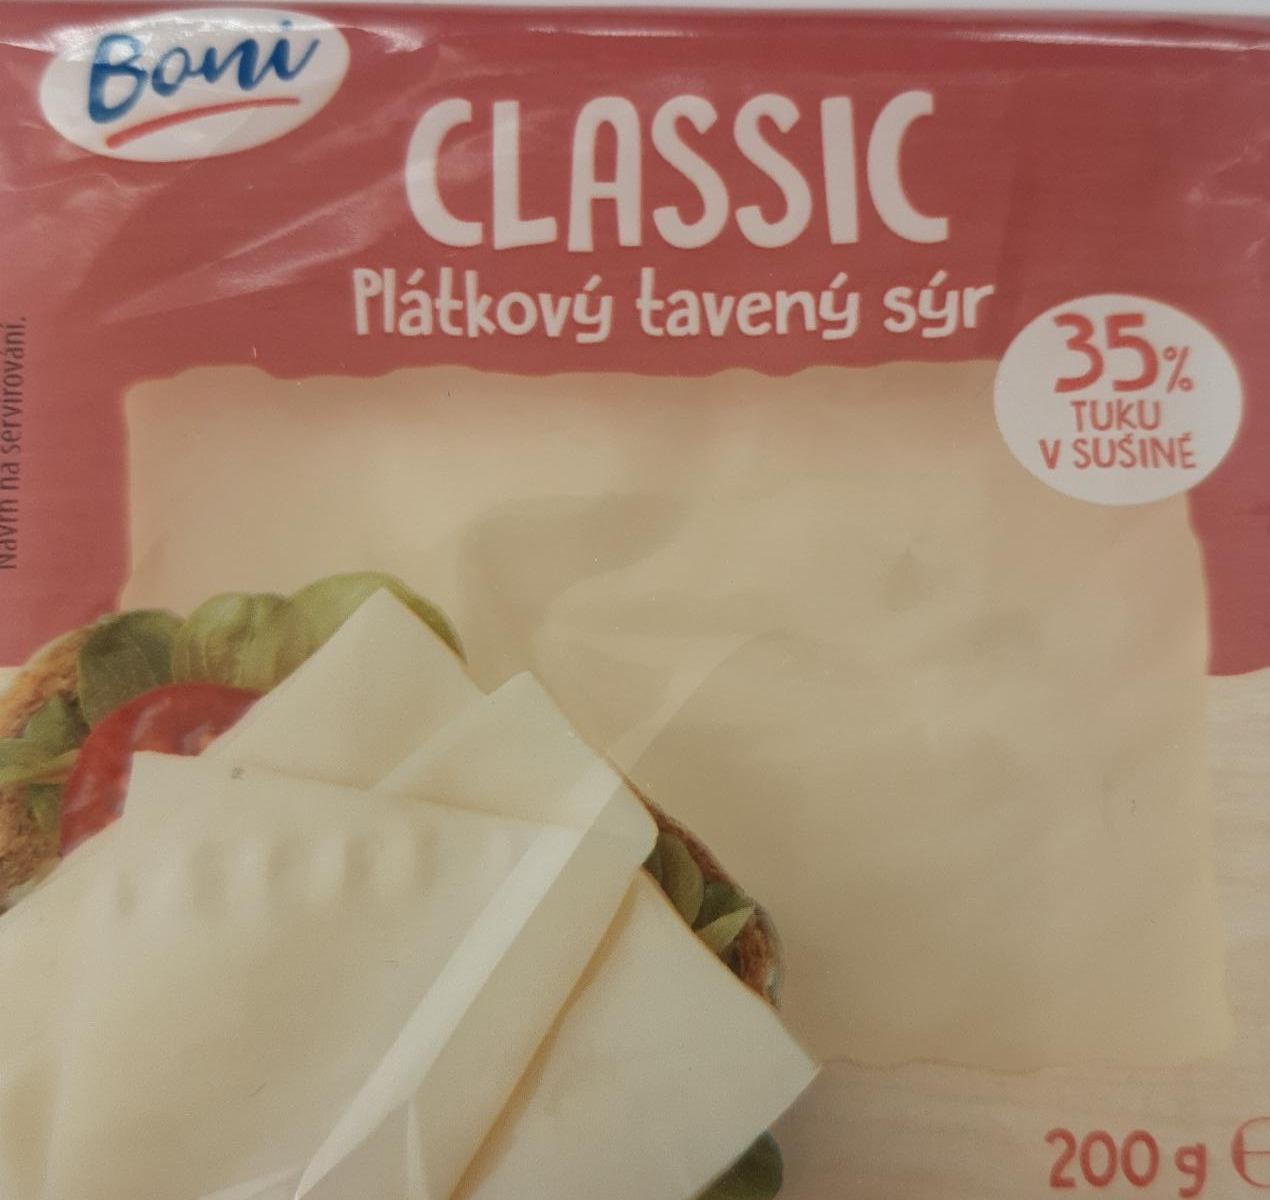 Fotografie - Plátkový tavený sýr Classic 35% tuku Boni